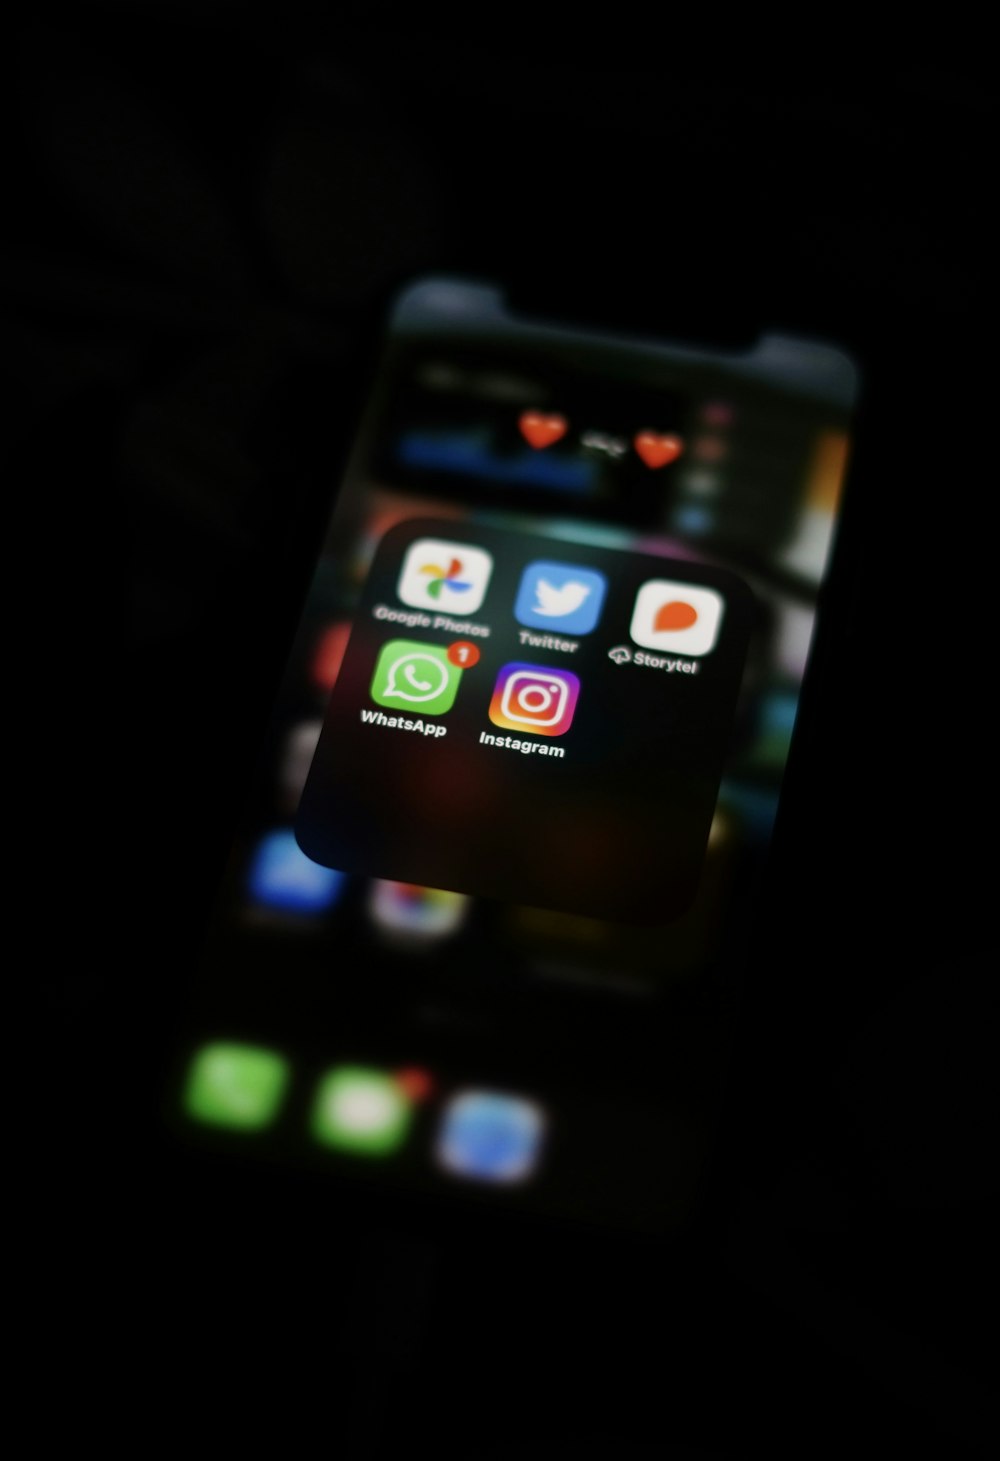 Schwarzes iPhone 4 auf dem Bildschirm eingeschaltet